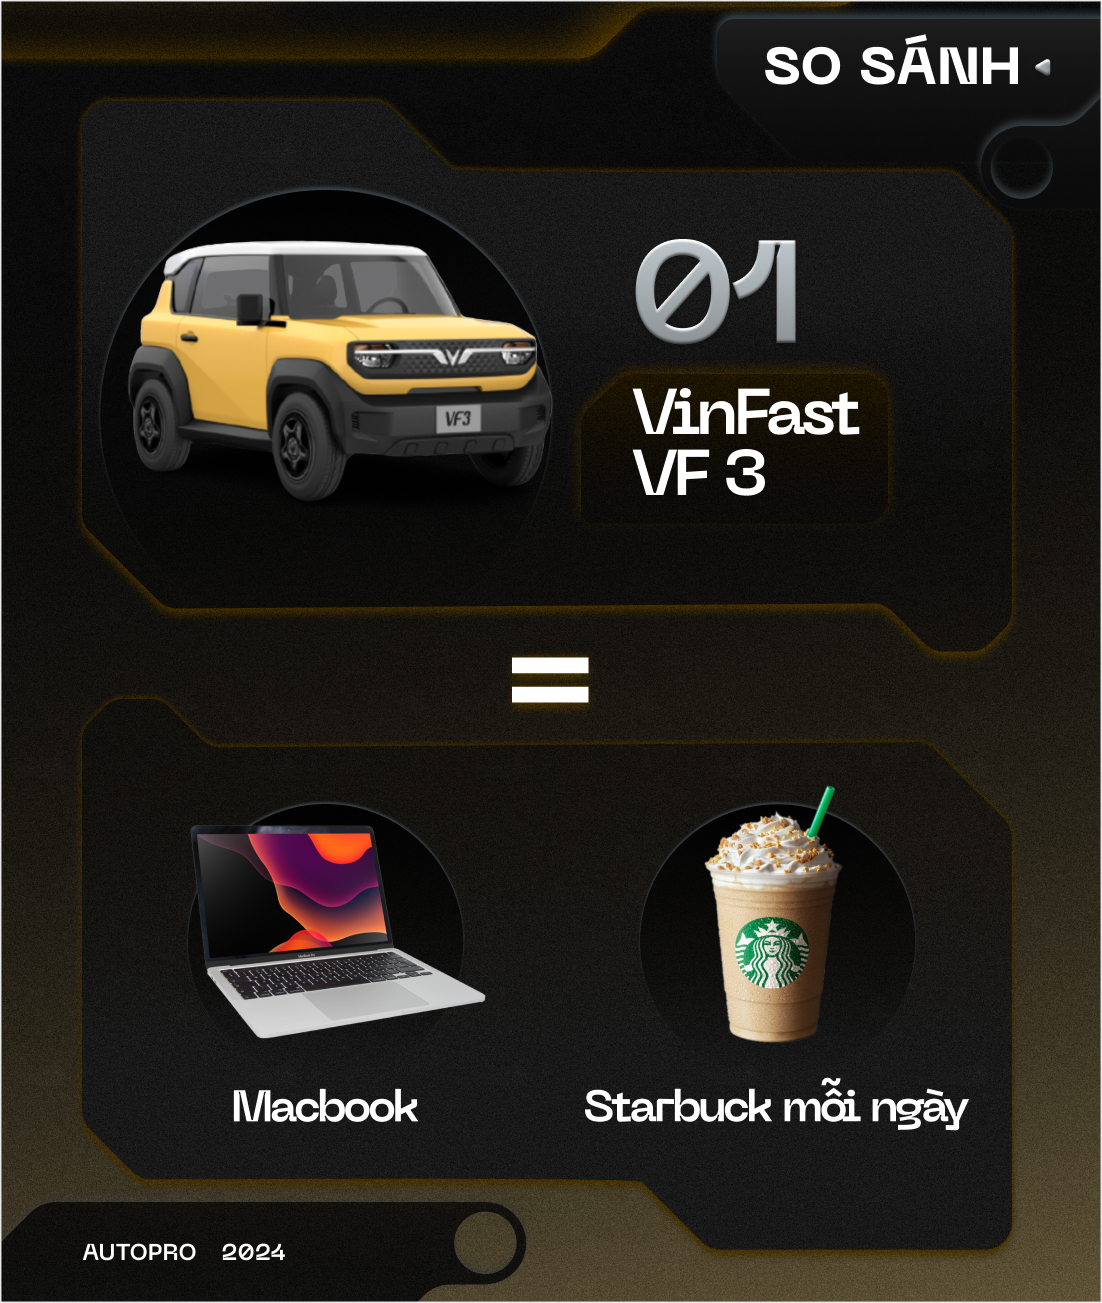 Nhịn uống trà sữa mỗi tháng, bạn có thể mua được VinFast VF 3 bằng cách này!- Ảnh 3.